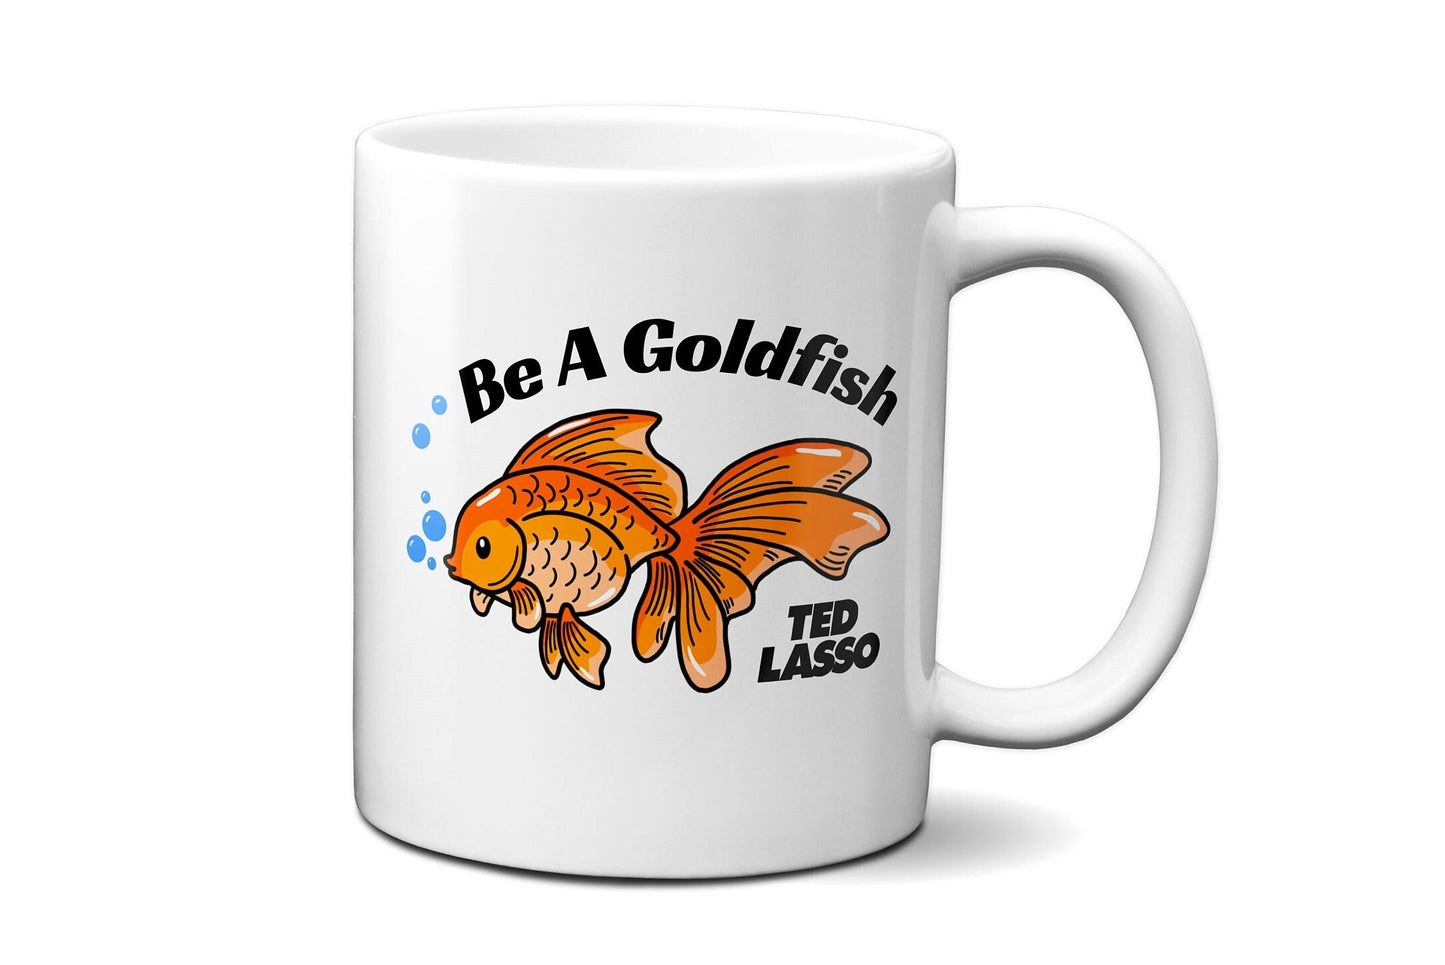 Be A Goldfish | Ted Lasso Mug